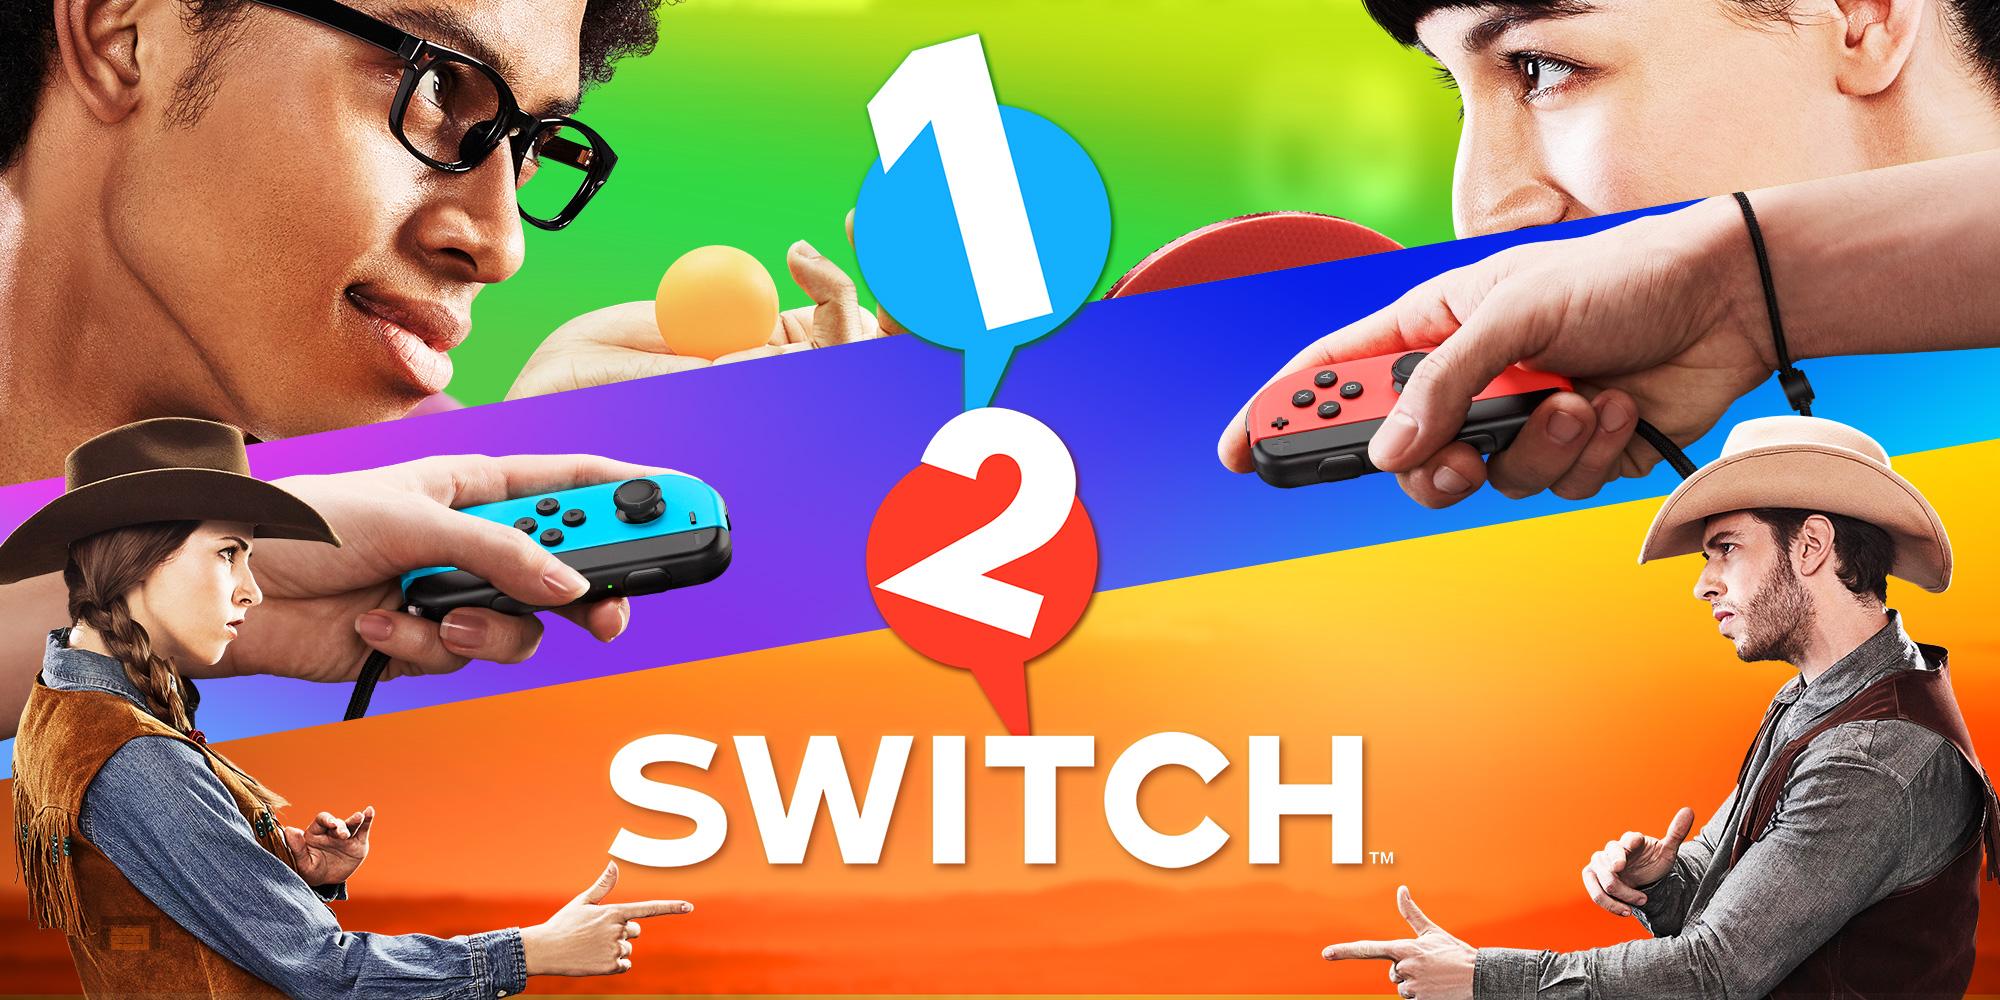 1-2-Switch tendrá cerca de 30 minijuegos. Puedes verlos en su nuevo tráiler